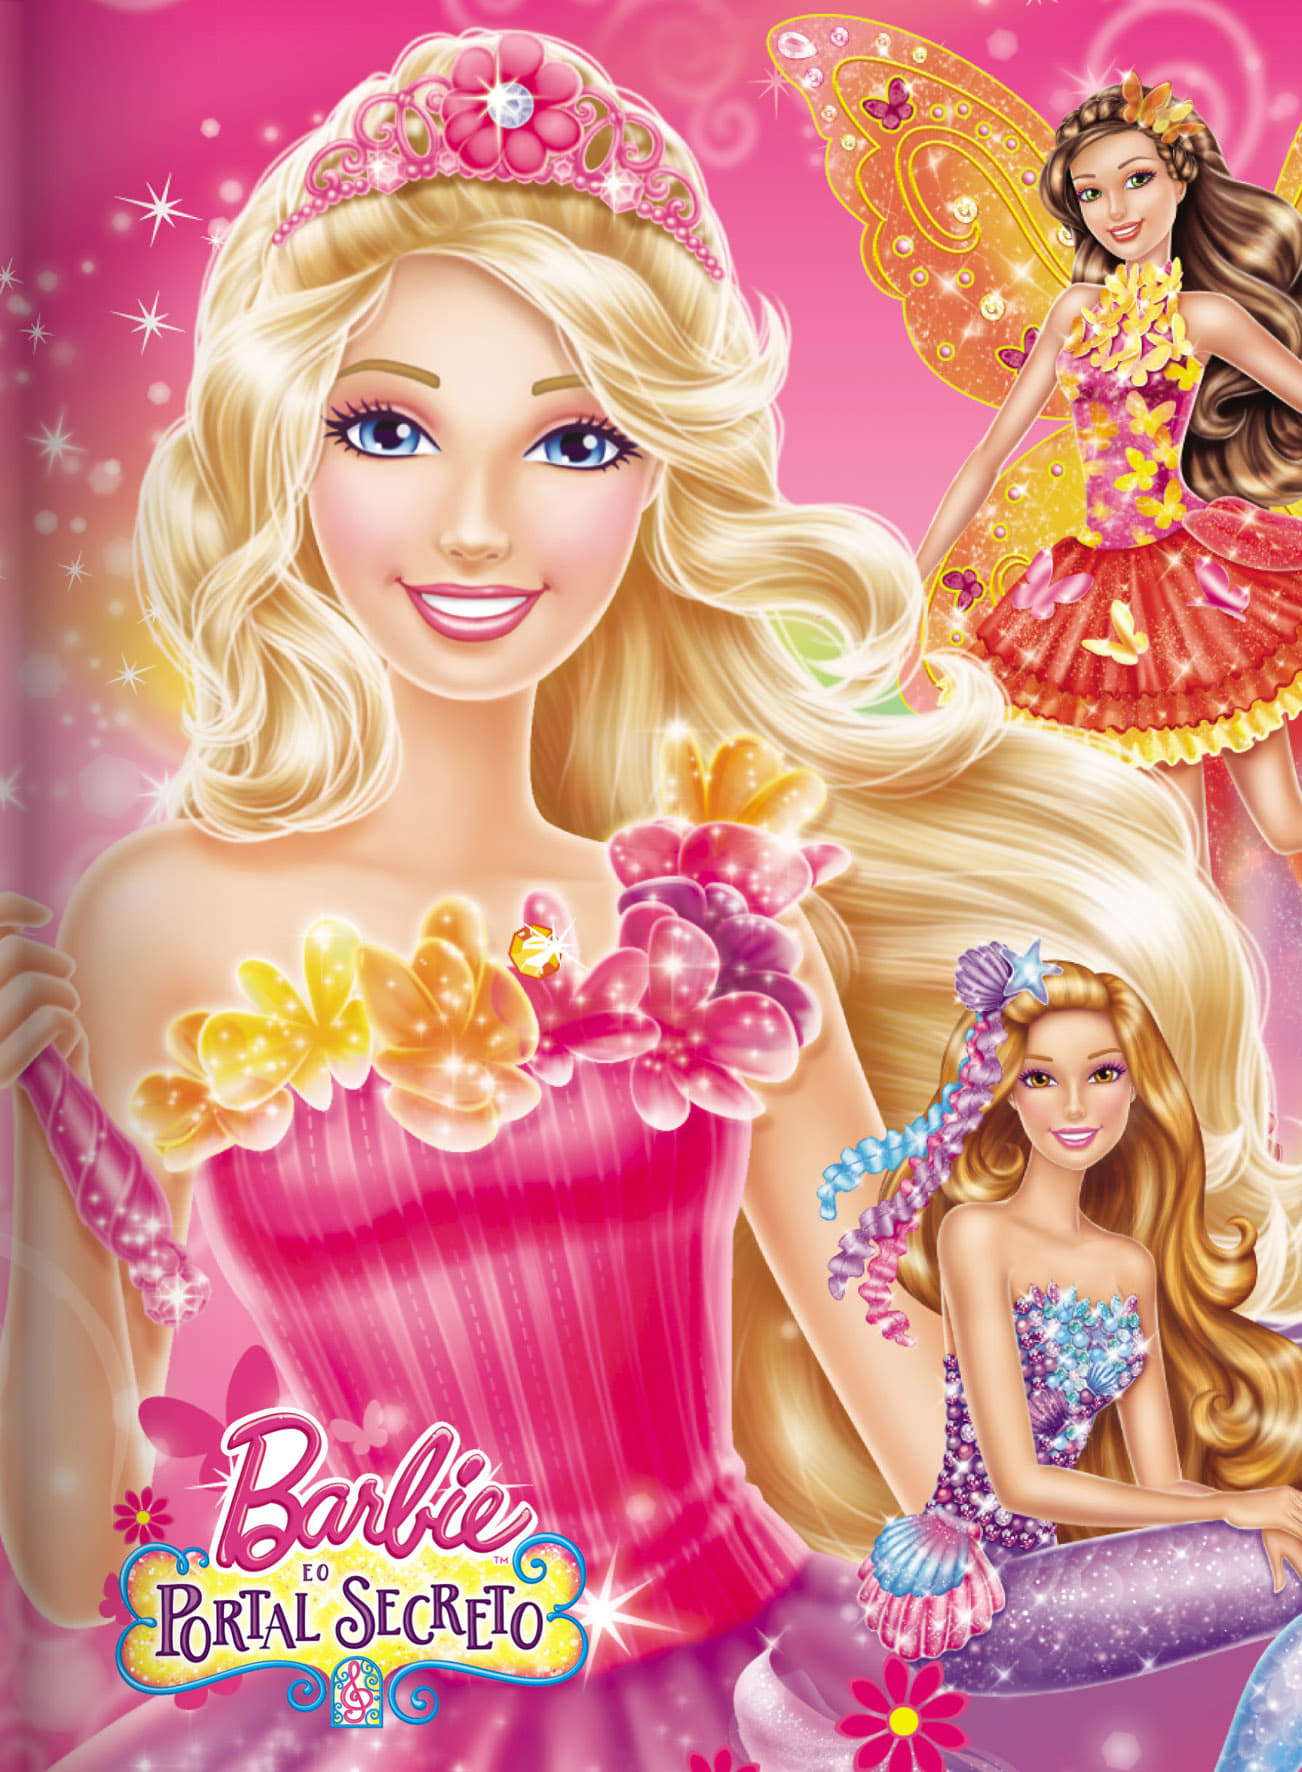 2014 Barbie And The Secret Door